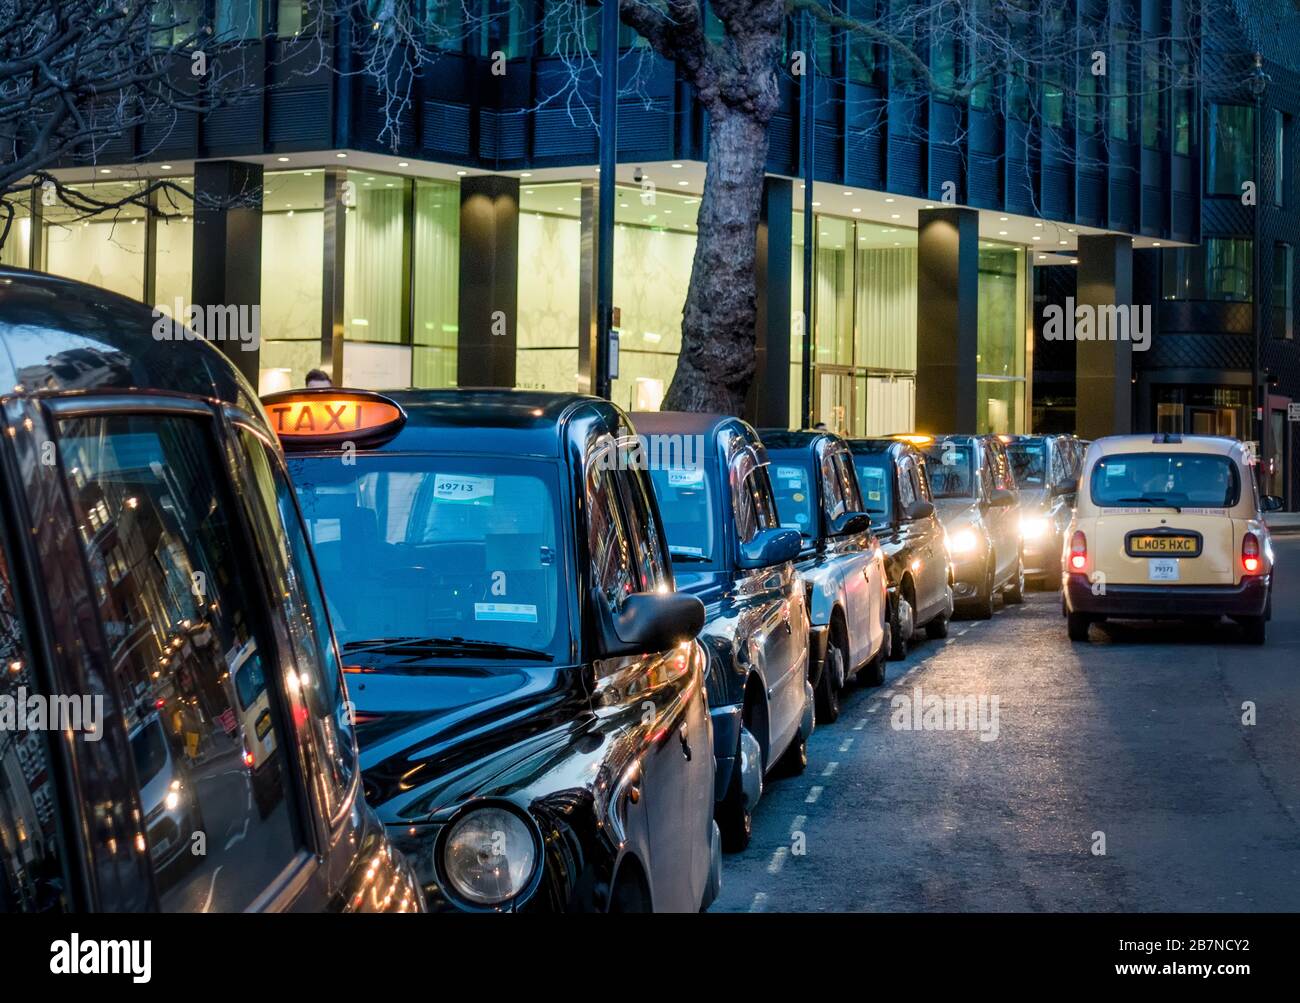 Regno Unito, Inghilterra, Londra. Un parcheggio taxi con caratteristici taxi neri londinesi Foto Stock